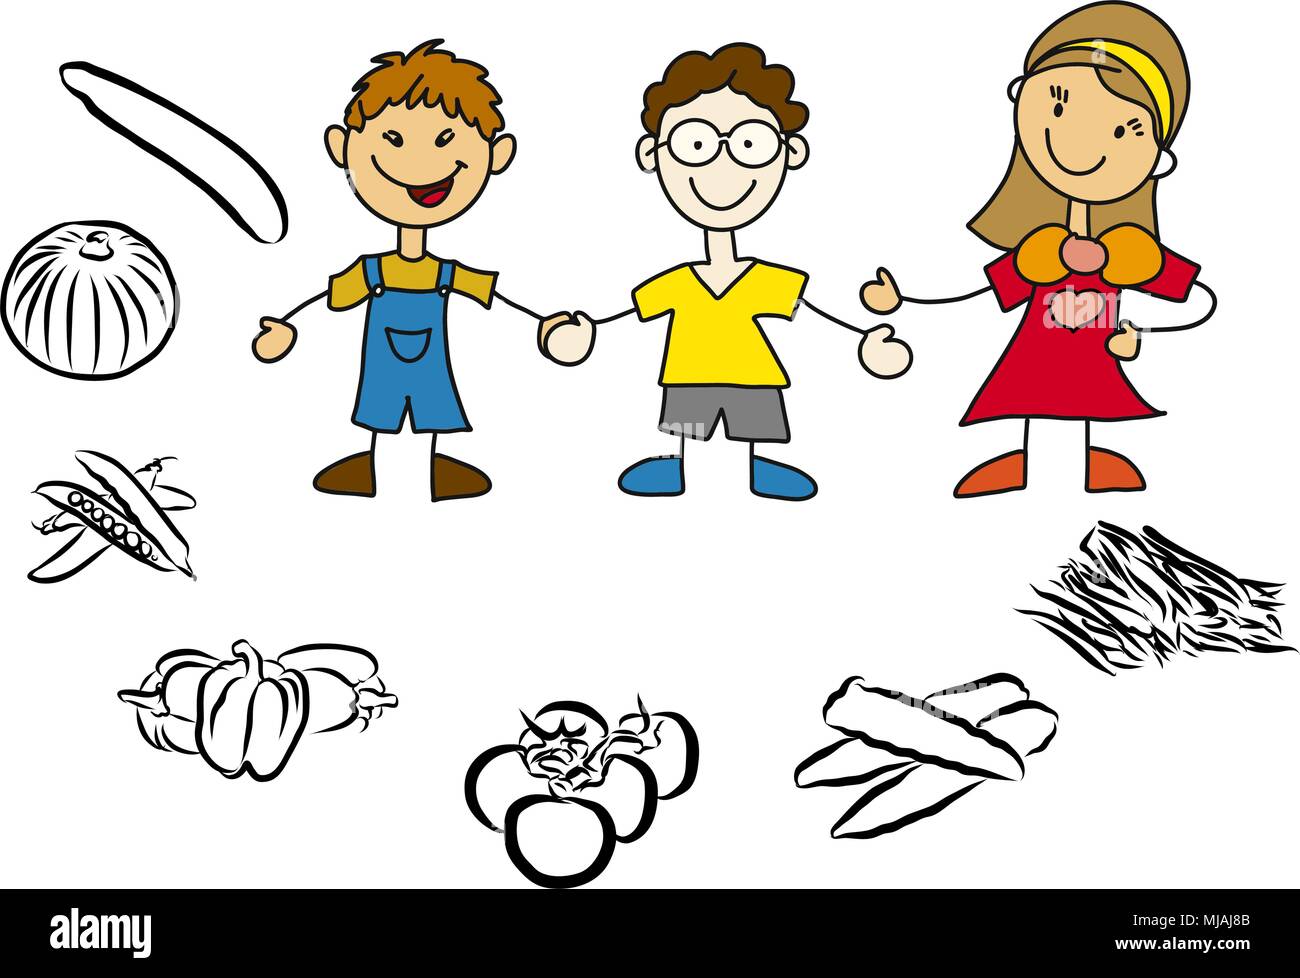 Gesunde Ernährung im Kindergarten, Kinder mit Erzieherin, Freihandskizze Vektor illustrazione Illustrazione Vettoriale